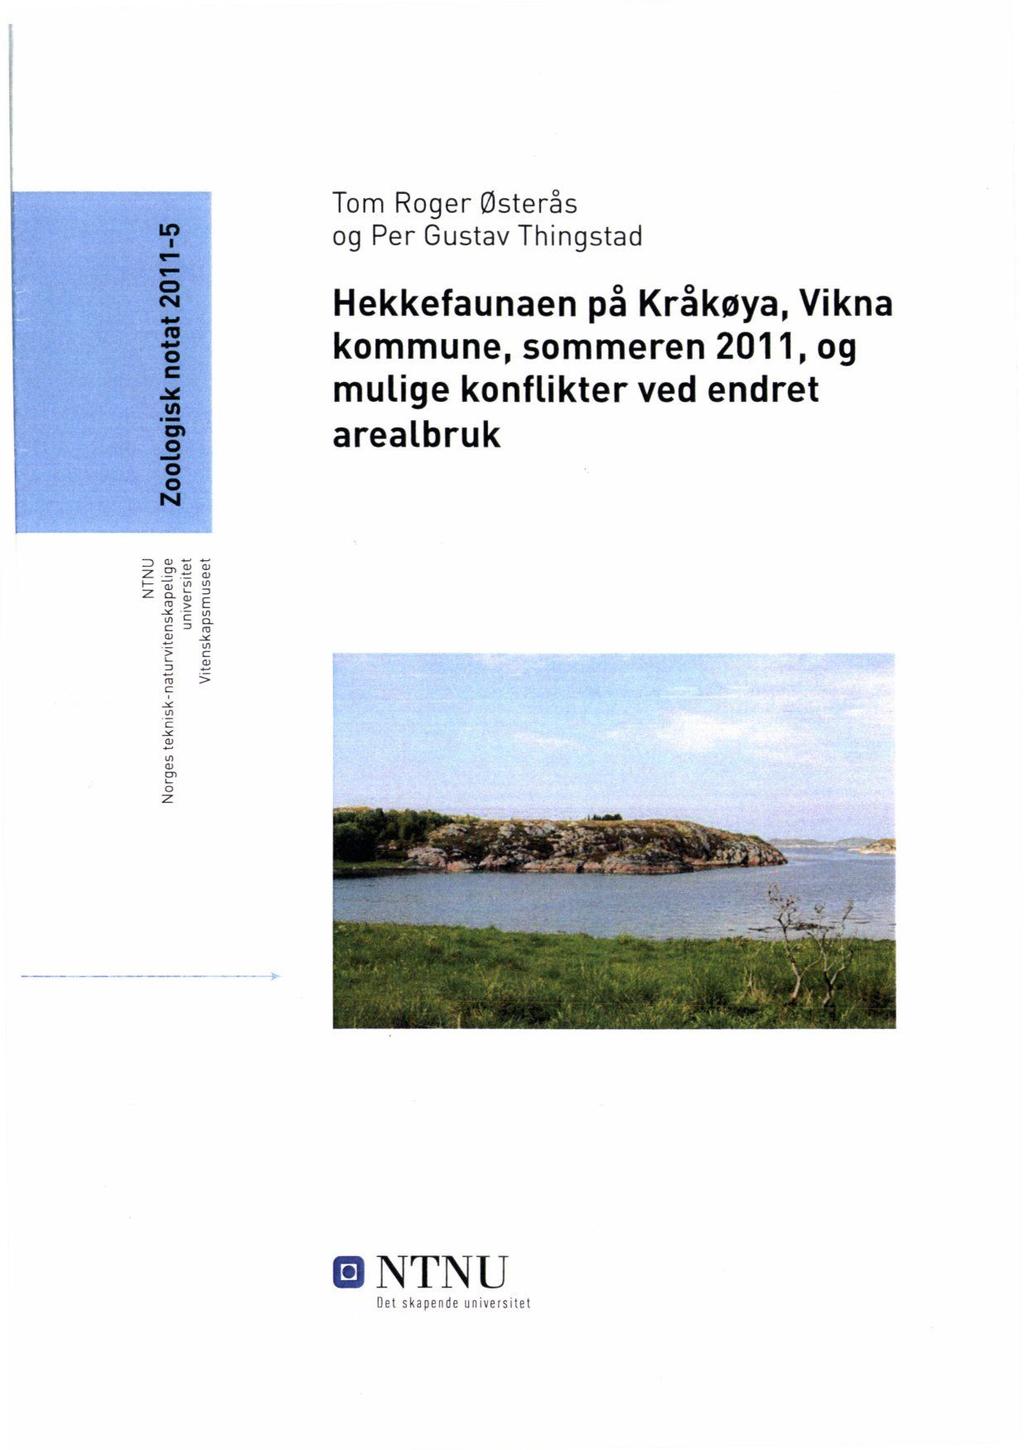 Tom Roger Østerås og Per Gustav Thingstad Hekkefaunaen på Kråkøya, Vikna kommune,